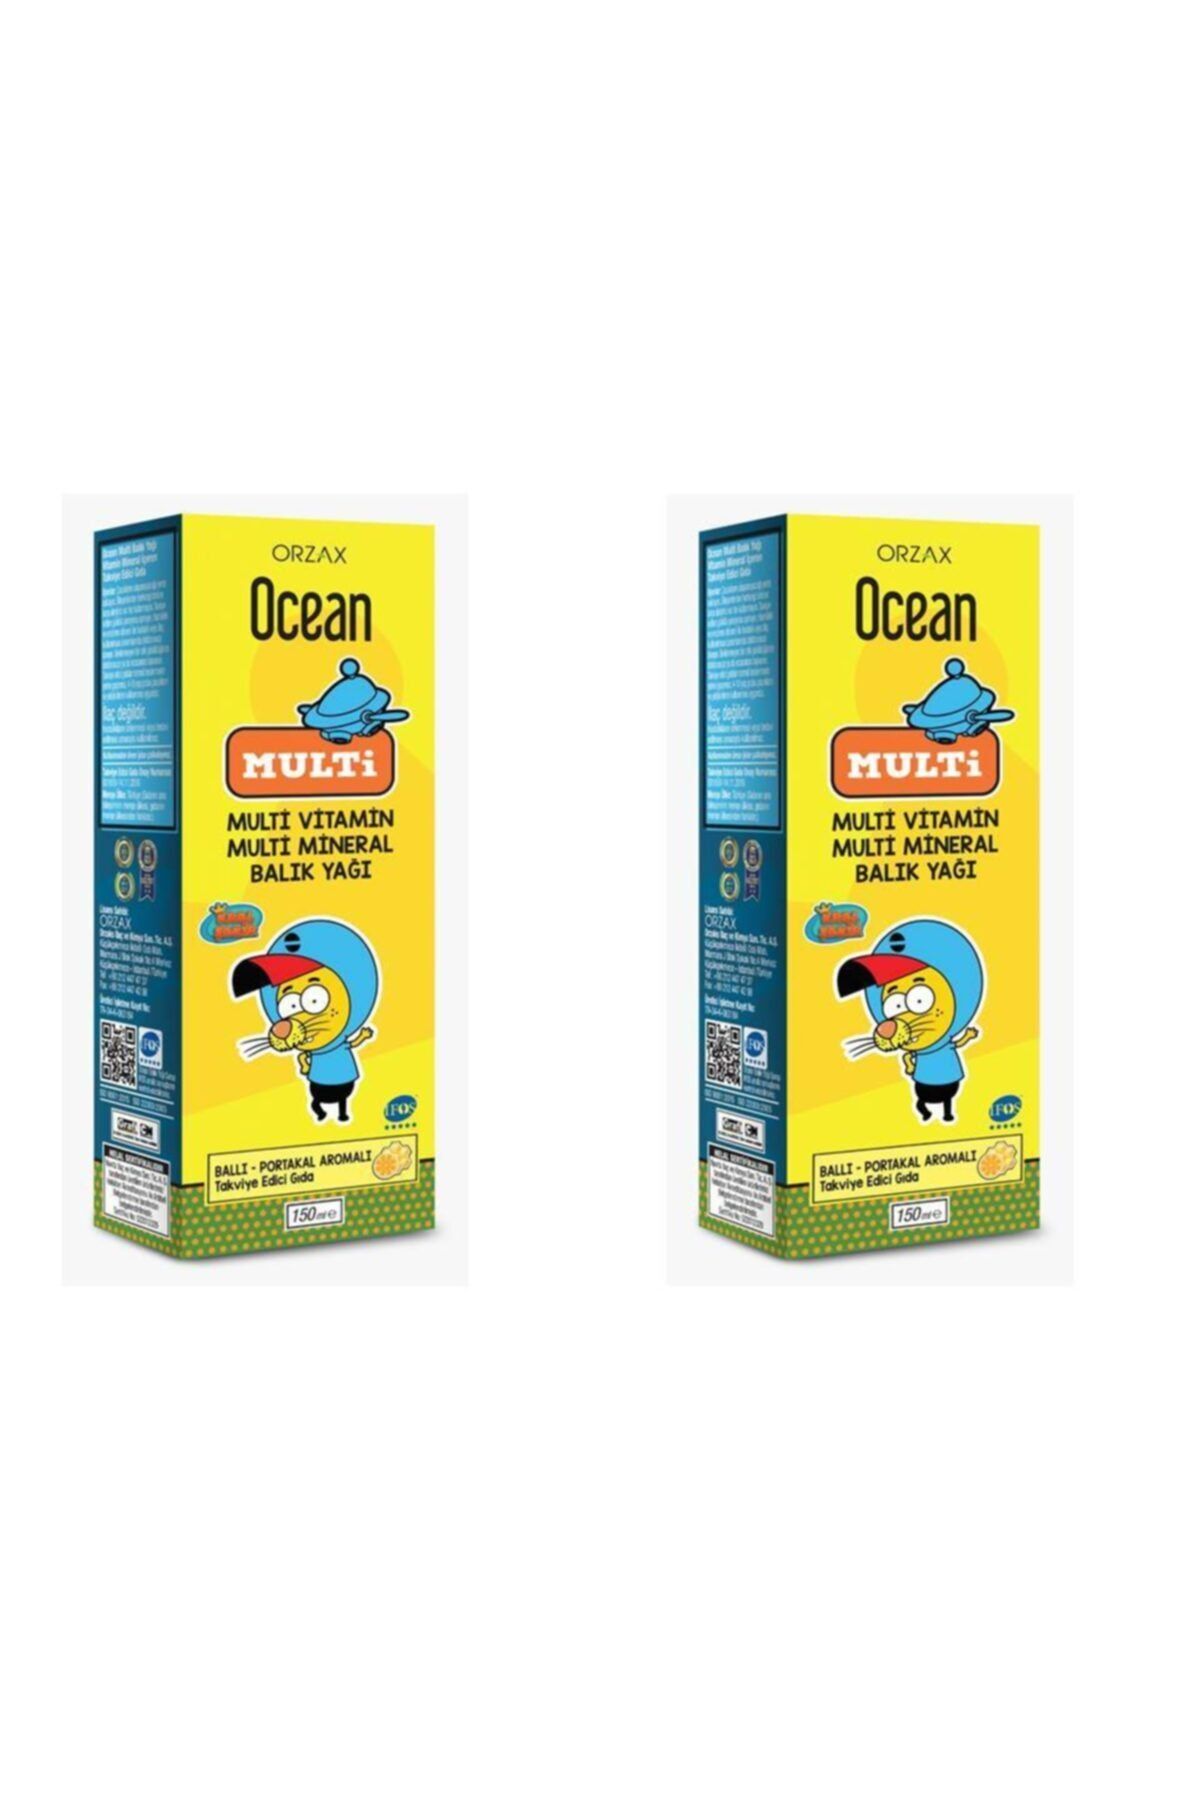 Ocean Multi Balık Yağı Şurup Ballı Portakallı 150 ml 2'li Paket